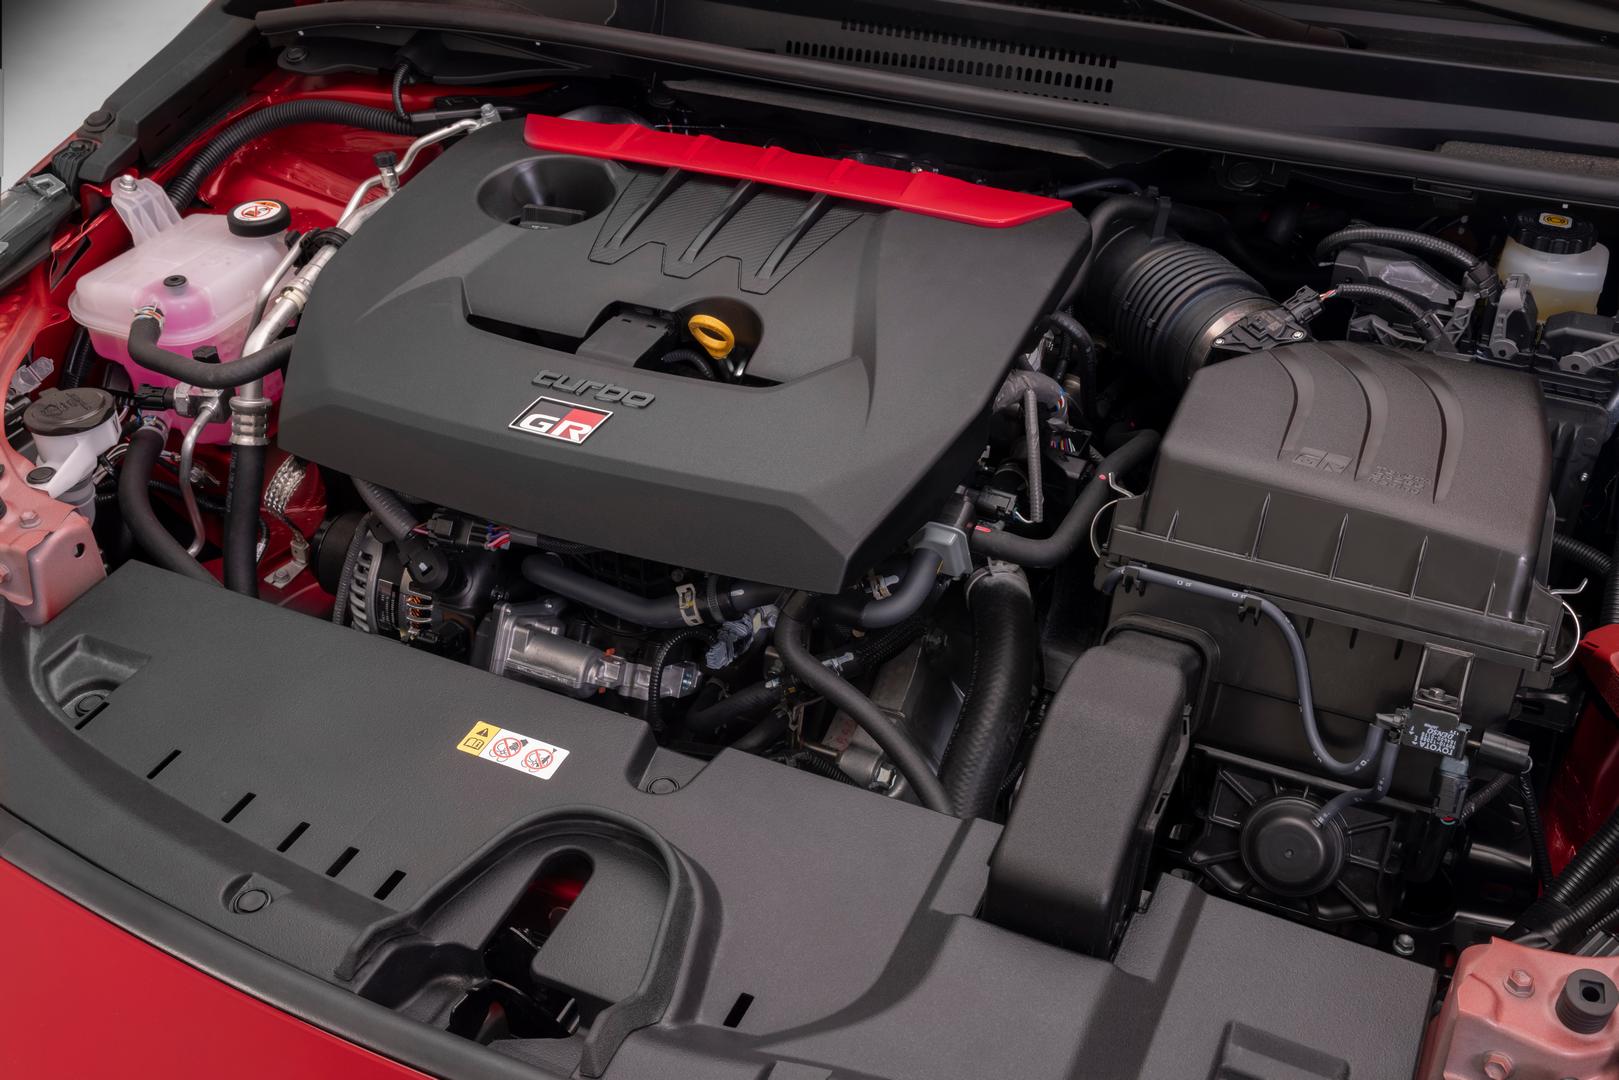 GR Corolla Core Edition engine